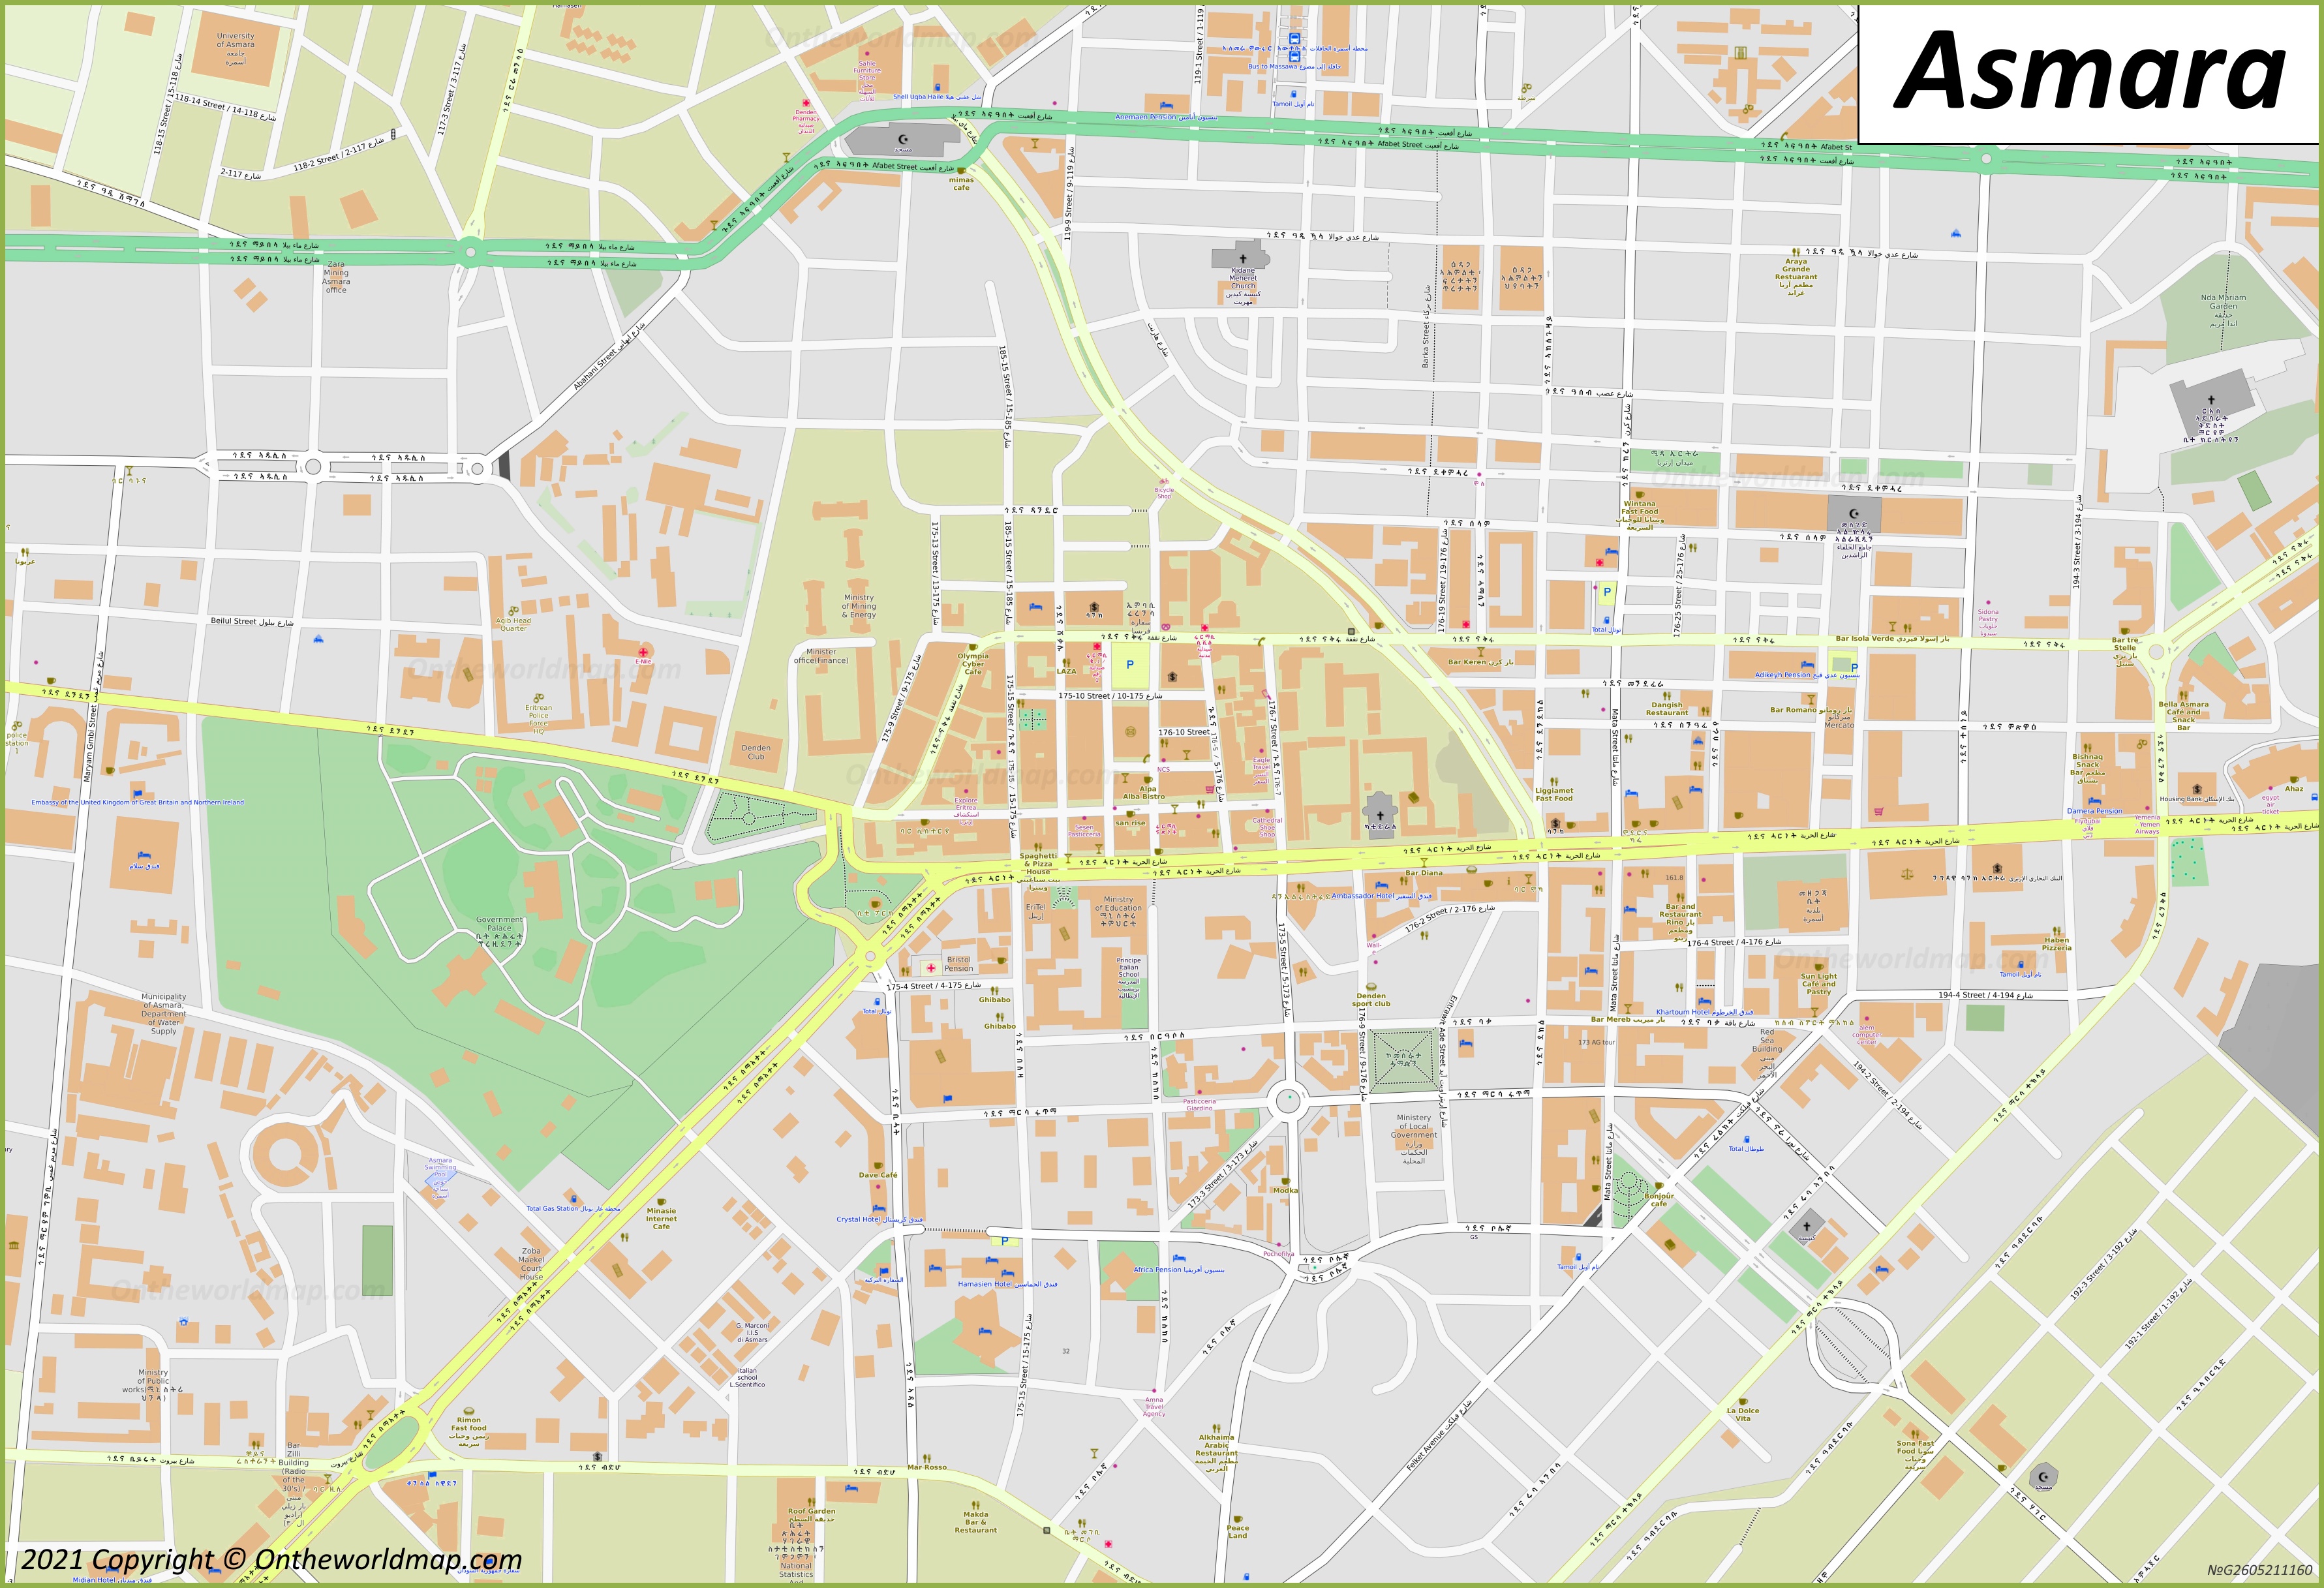 Asmara City Center Map